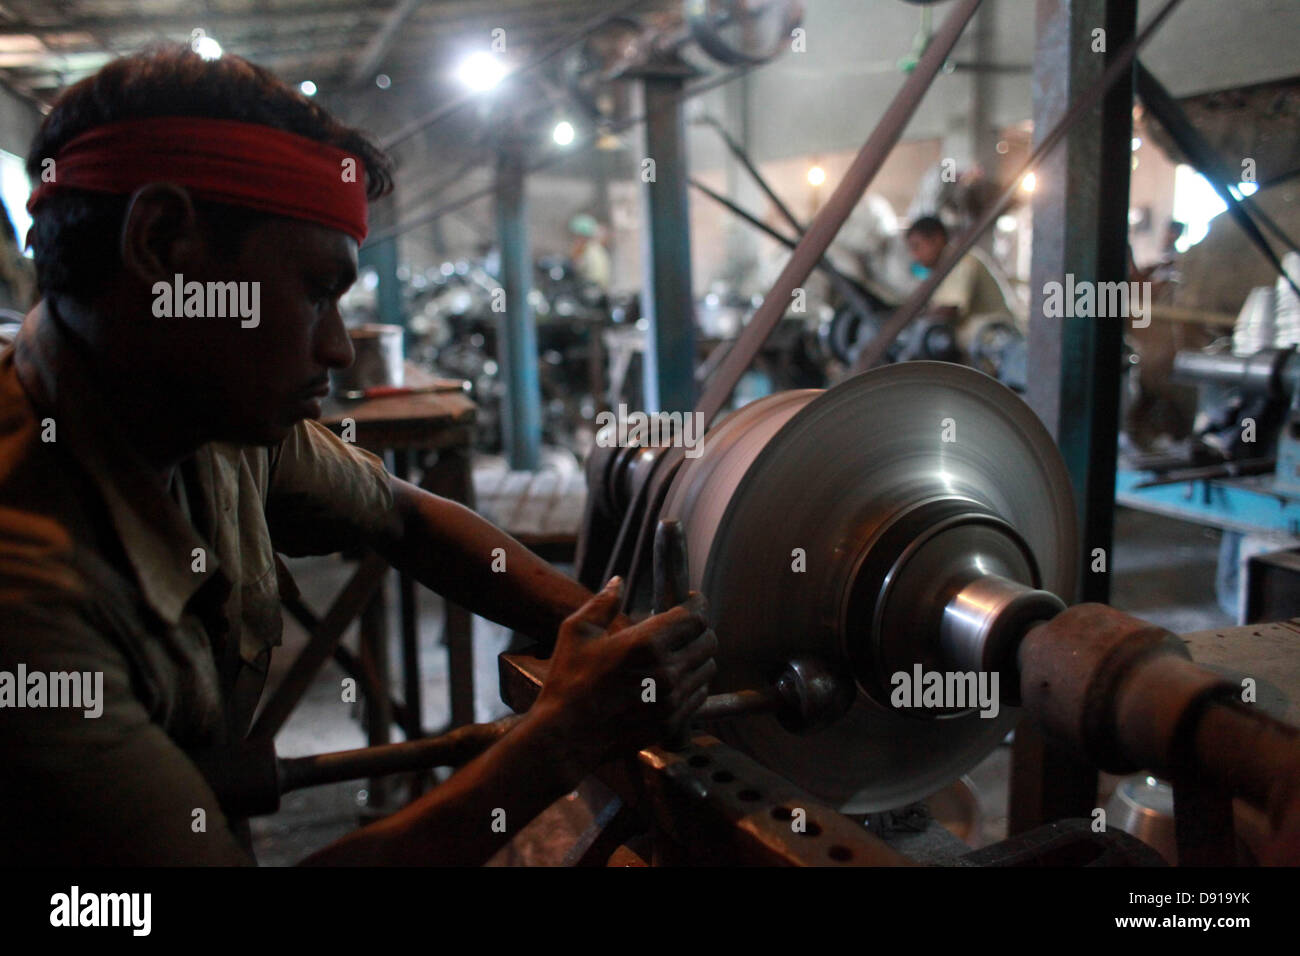 Bangladesch Arbeiter arbeiten an einem begrenzten Arbeitsplatz in oft beengten Verhältnissen und ohne viel in der Art von Sicherheitsausrüstung. Selbst diejenigen, die Arbeiten in einer Metallfabrik tun dies ohne Masken oder Handschuhe, bei denen sie das Risiko von Unfällen oder Krankheiten. Stockfoto